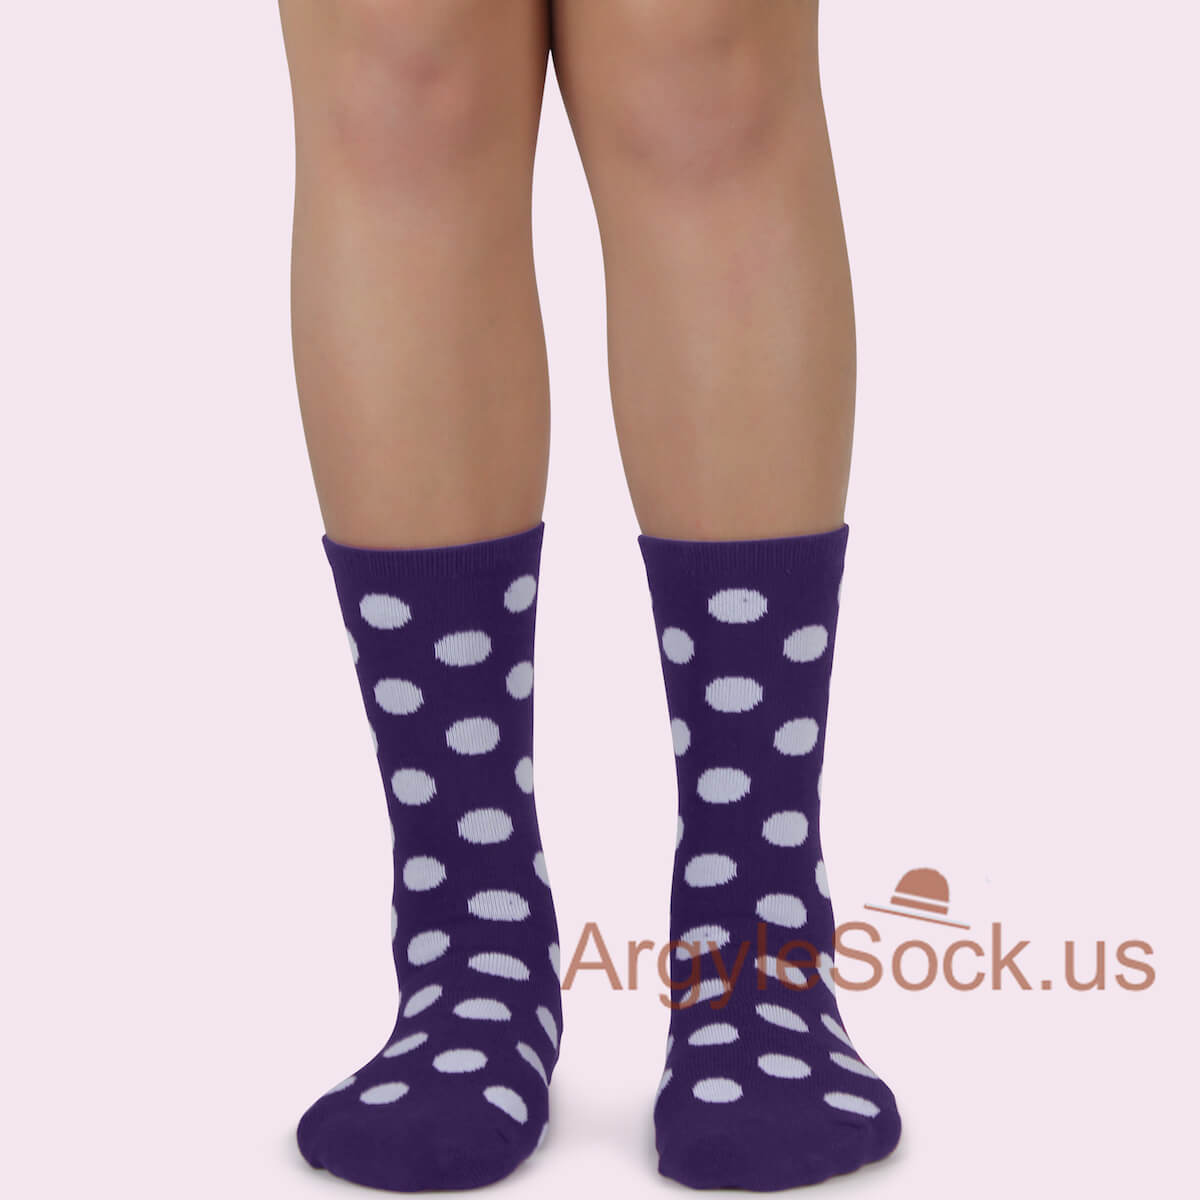 Purple with White Polka dots Junior Groomsmen/Ring Bearer Socks